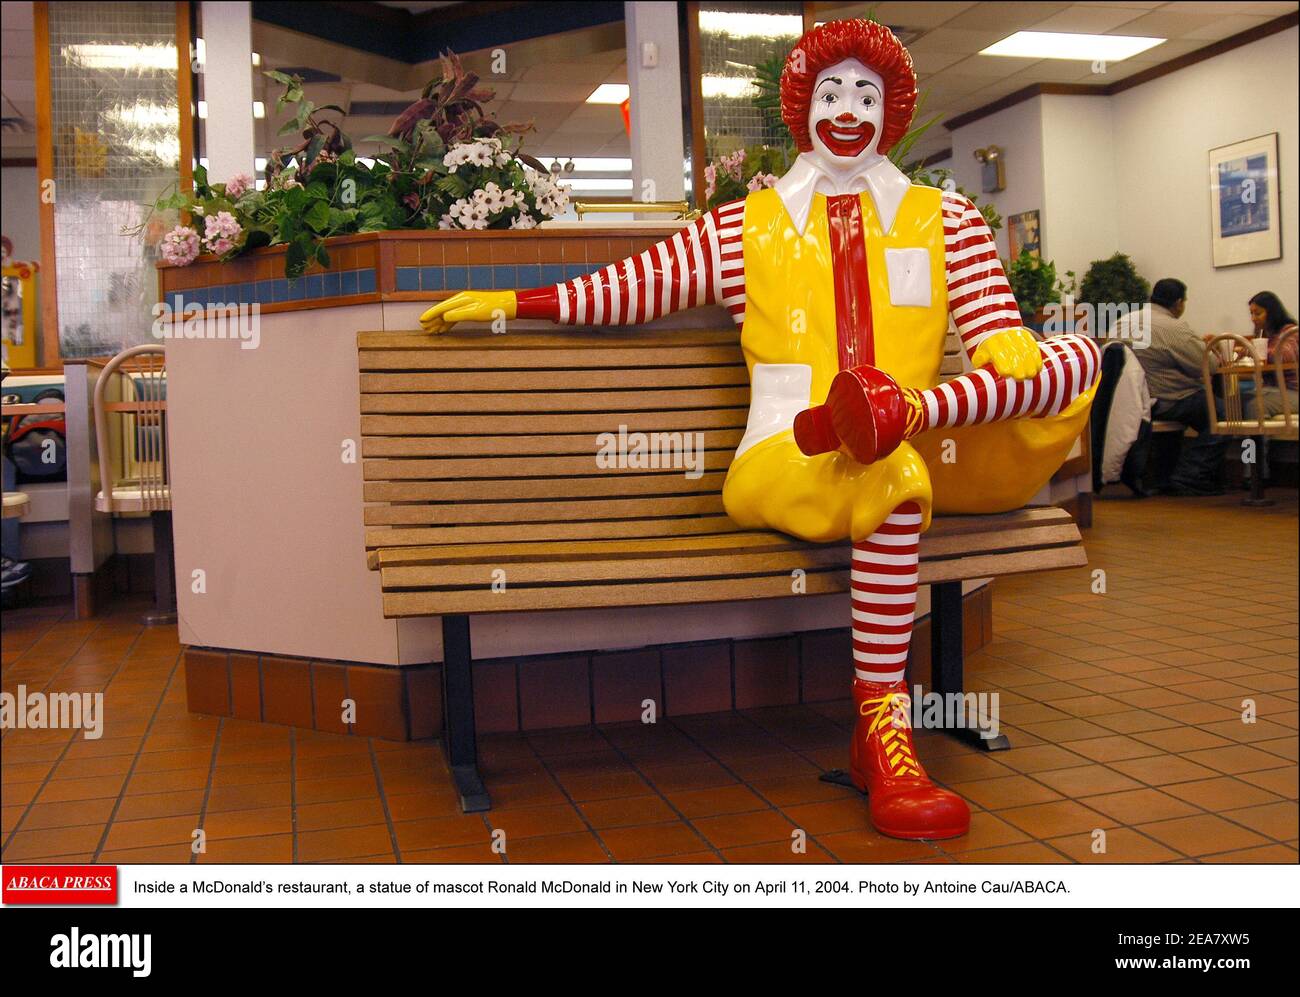 Dans un restaurant McDonald's, une statue de mascotte Ronald McDonald à New York le 11 avril 2004. Photo par Antoine Cau/ABACA. Banque D'Images